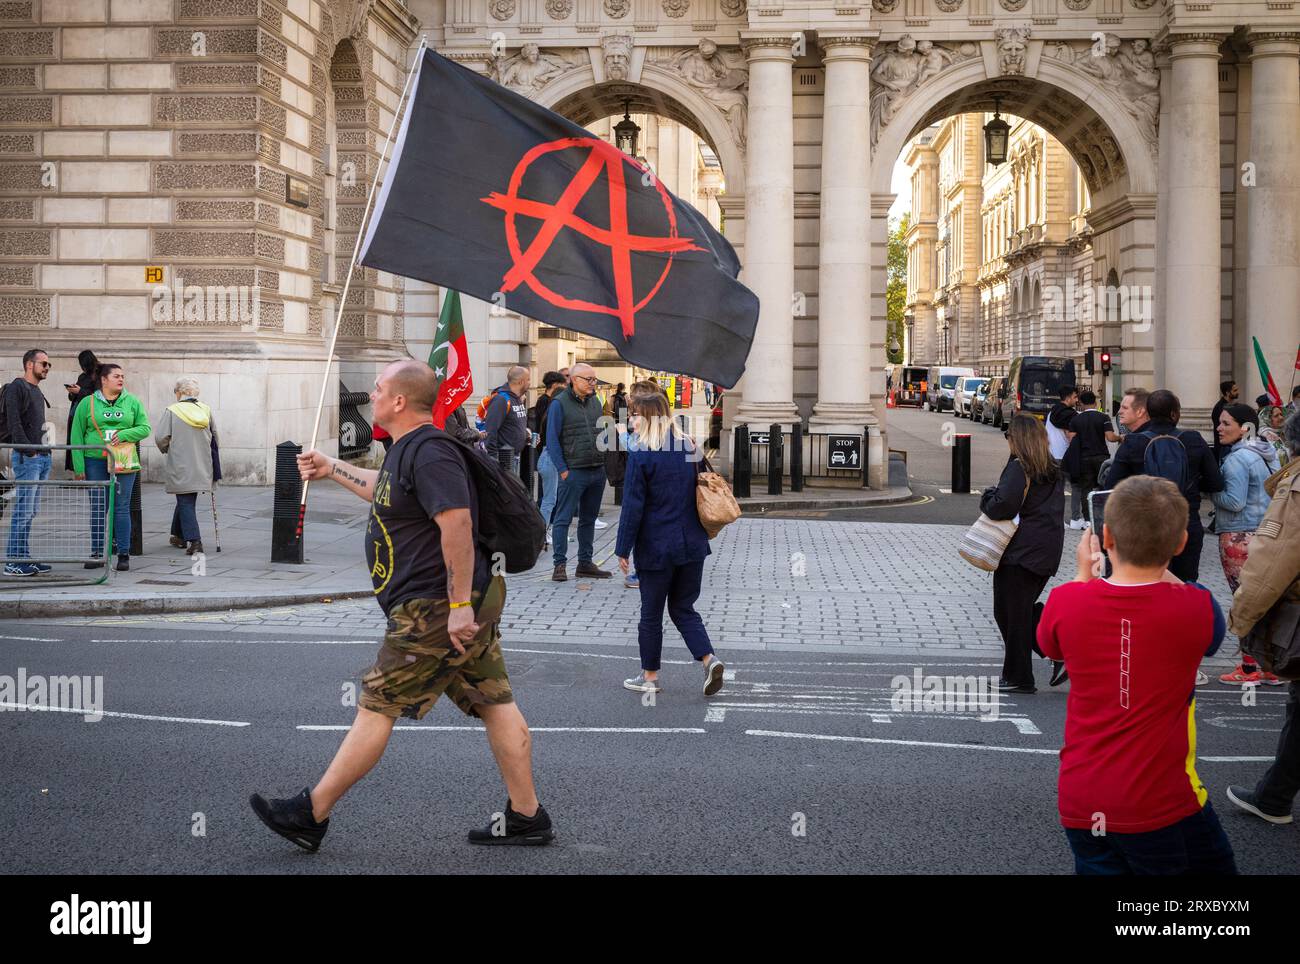 Un homme porte un drapeau anarchiste devant le ministère britannique des Affaires étrangères et les touristes alors qu'il descend Whitehall dans le centre de Londres. Il avait été atte Banque D'Images